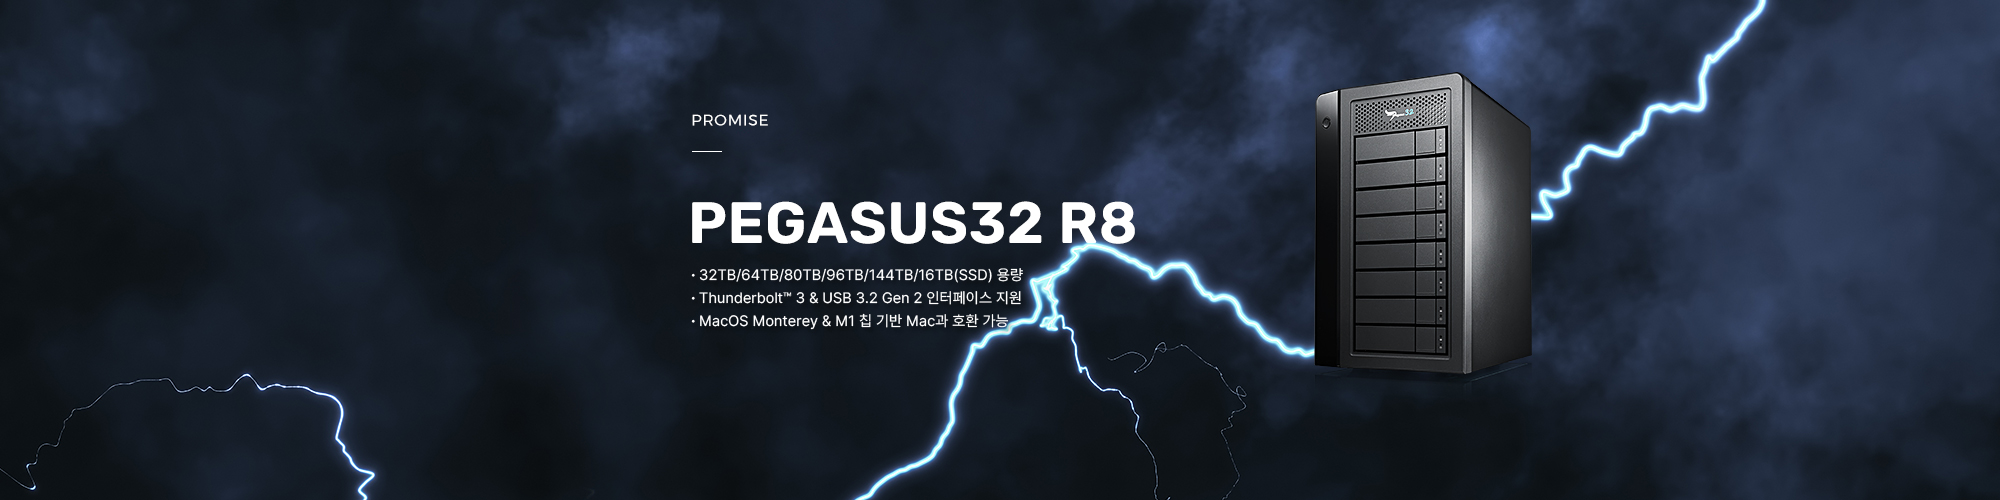 크리에이티브 전문가를 위한 8베이 하드웨어 RAID 스토리지, PROMISE Pegasus32 R8 제품 보러가기